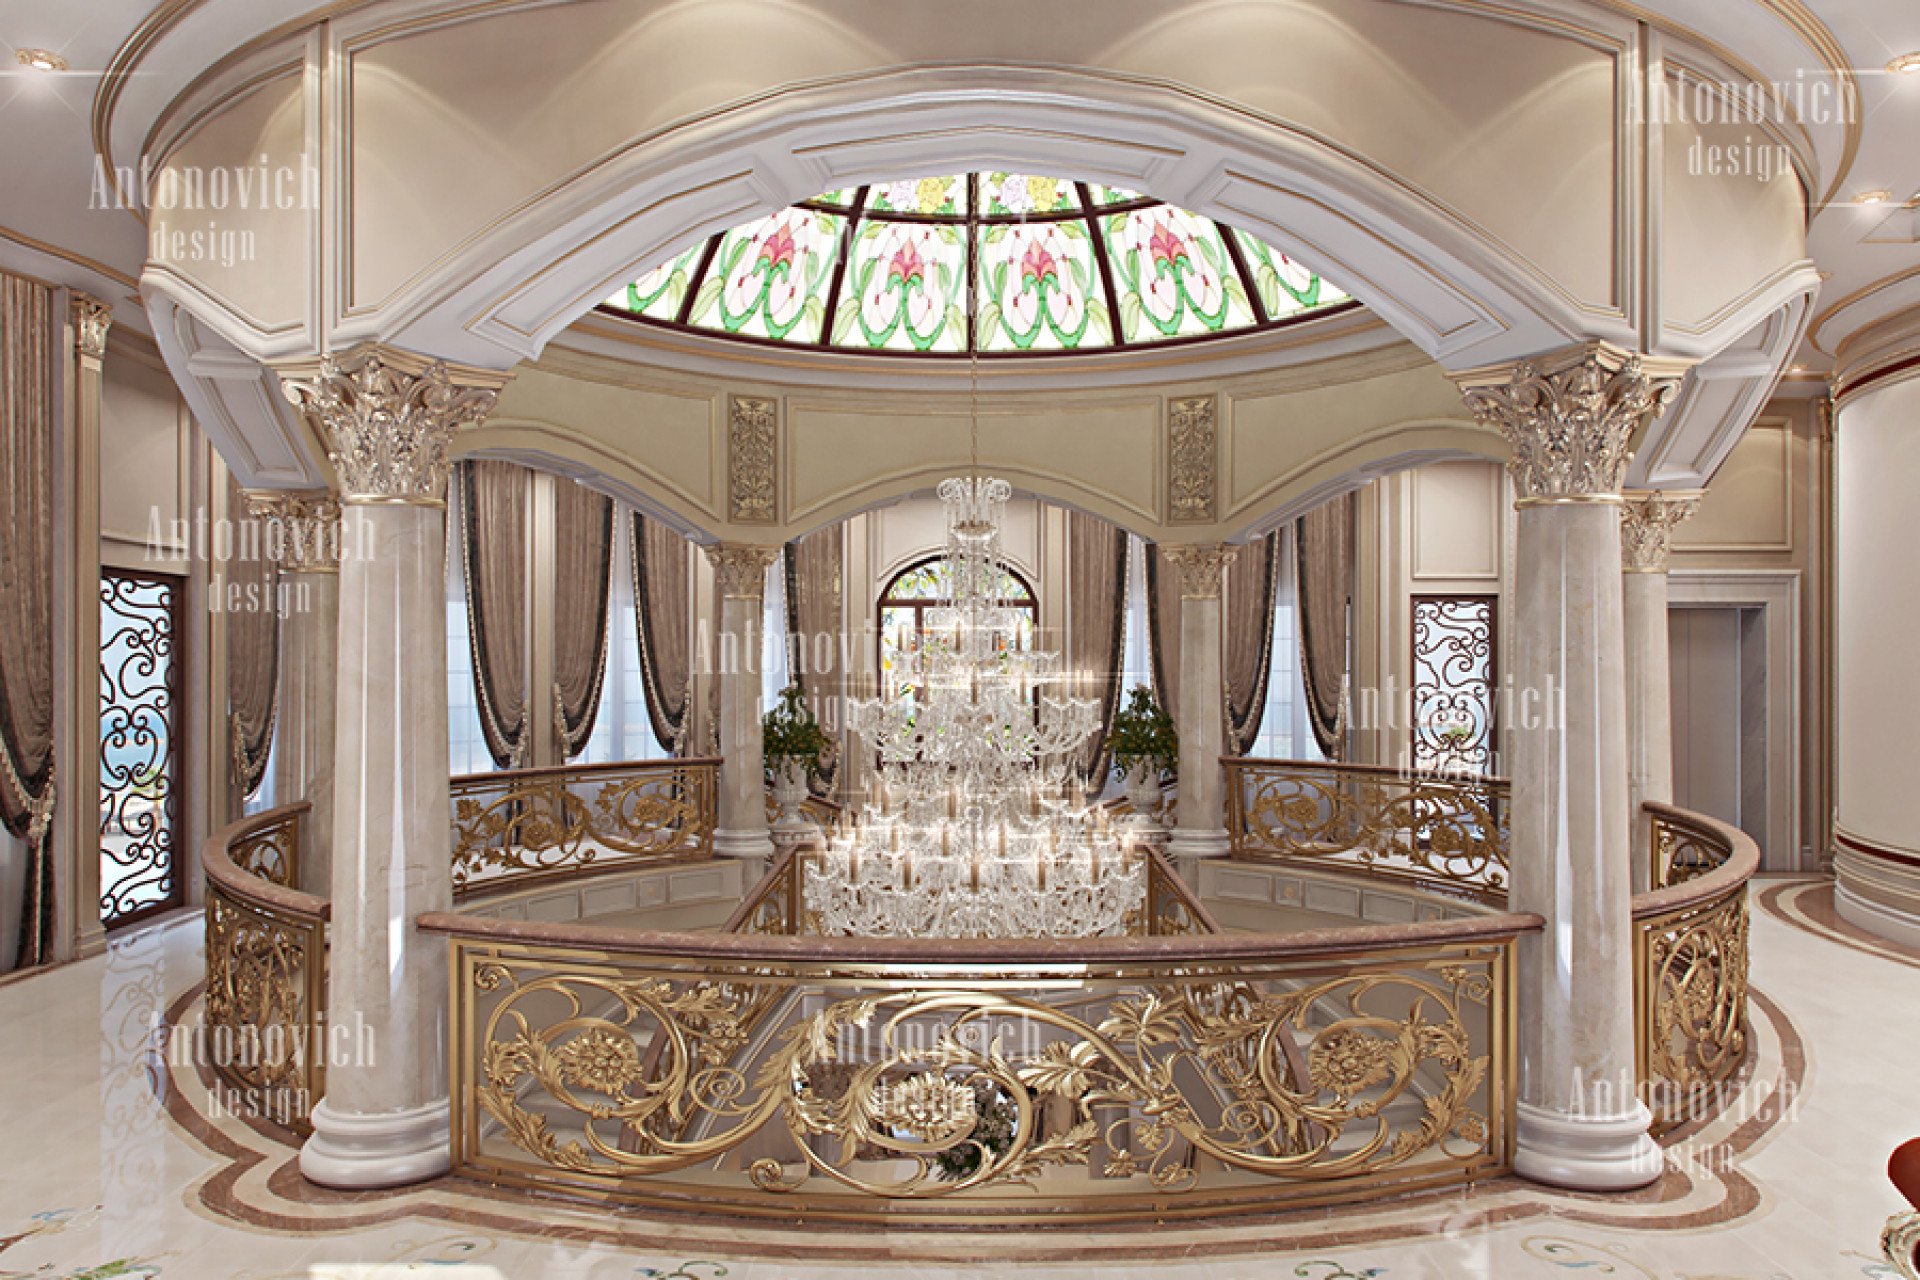 Classical Interior Design Florida